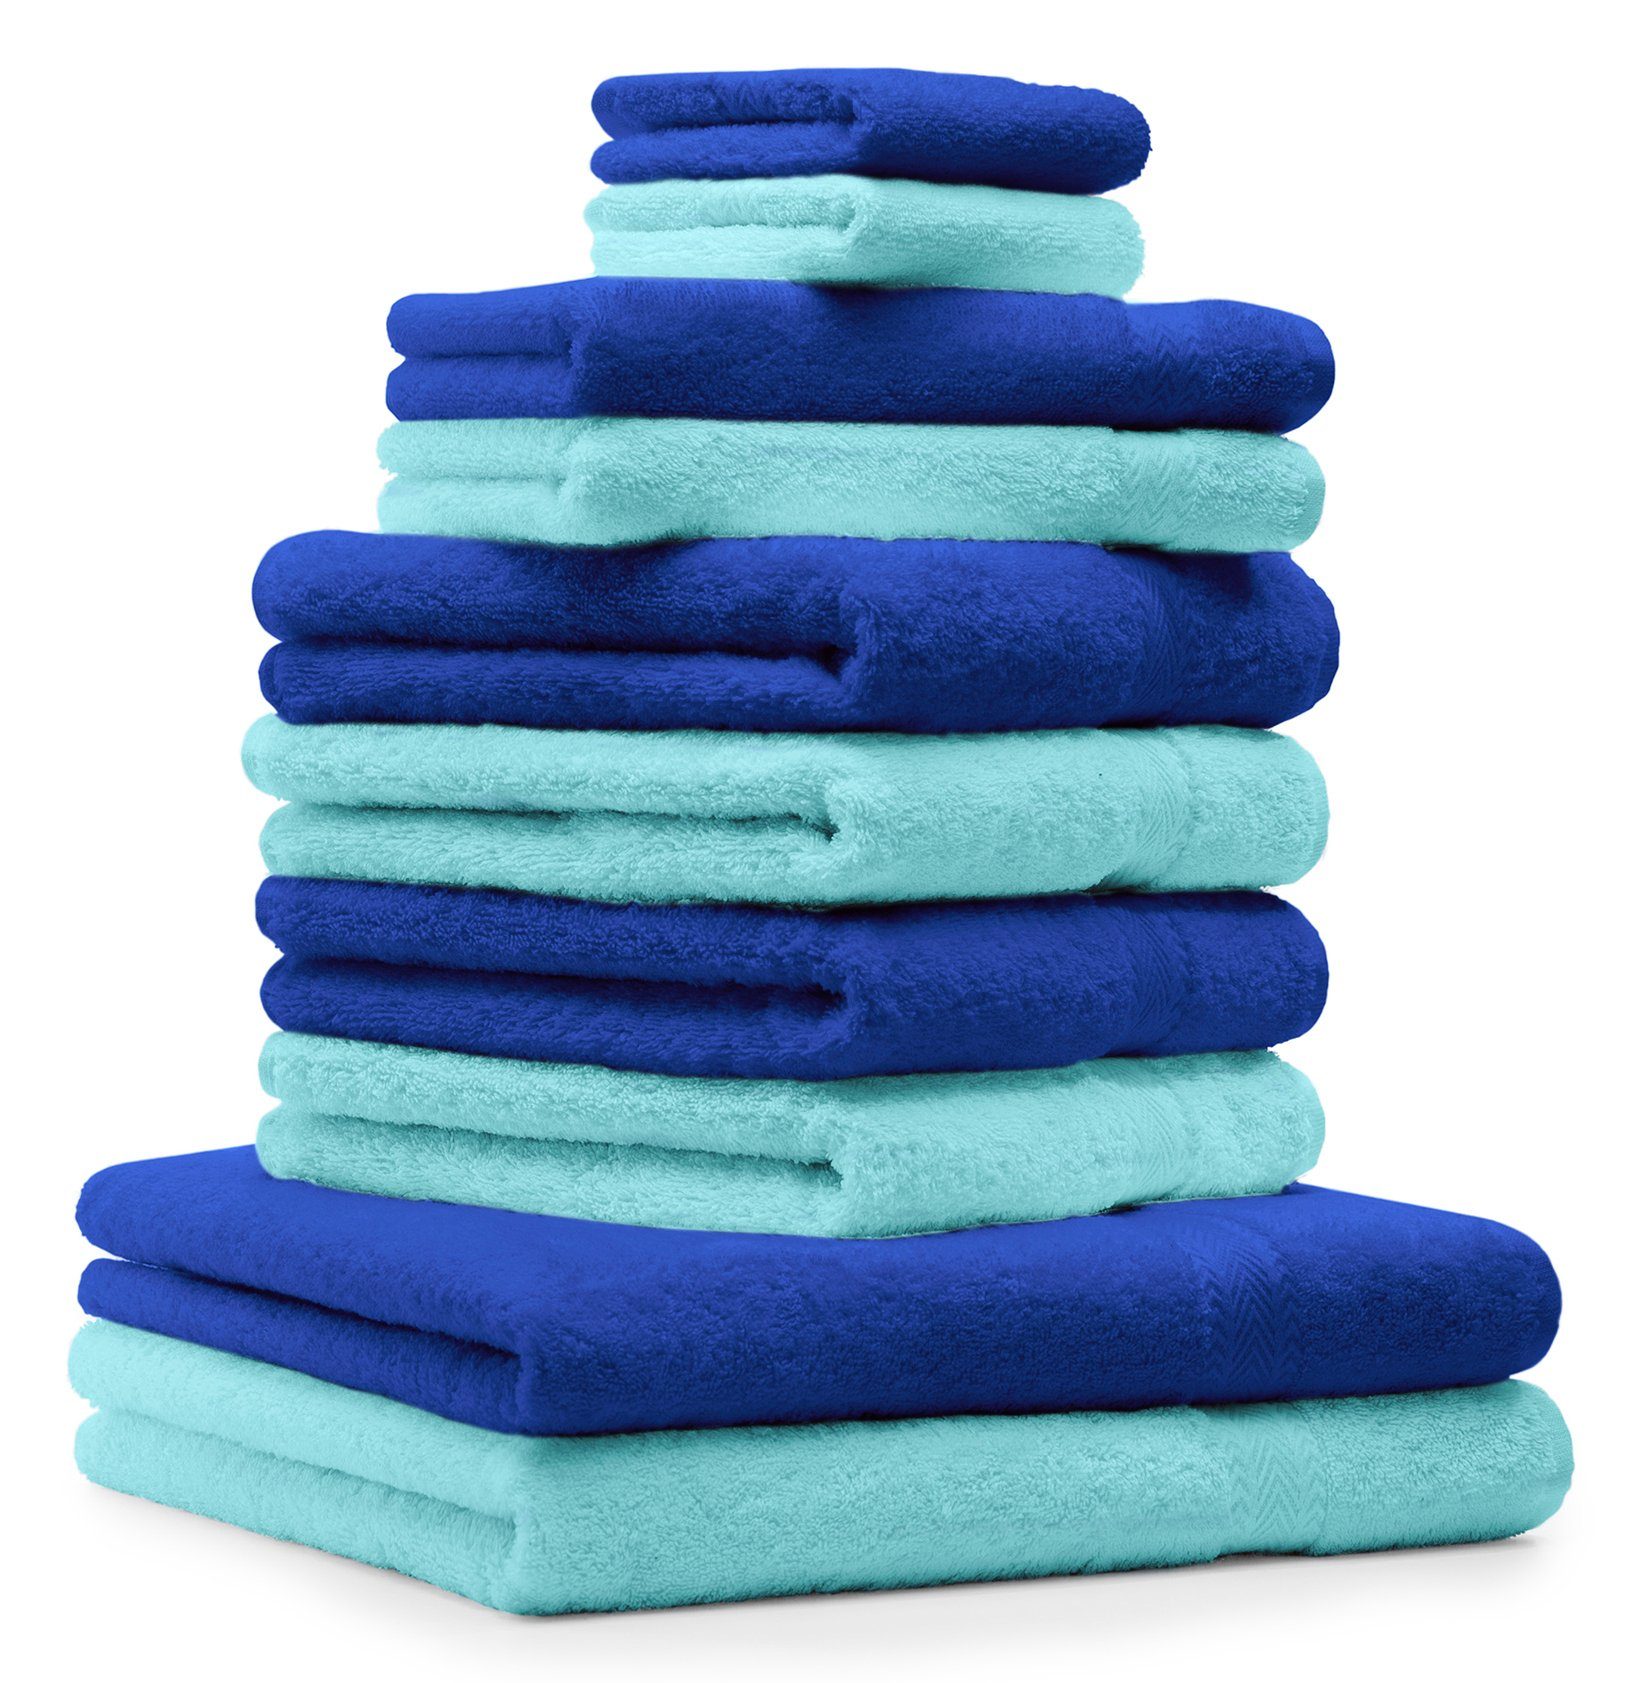 Betz Handtuch Set 10-TLG. Handtuch-Set Baumwolle türkis, Fb. 100% Baumwolle CLASSIC 100% und royalblau